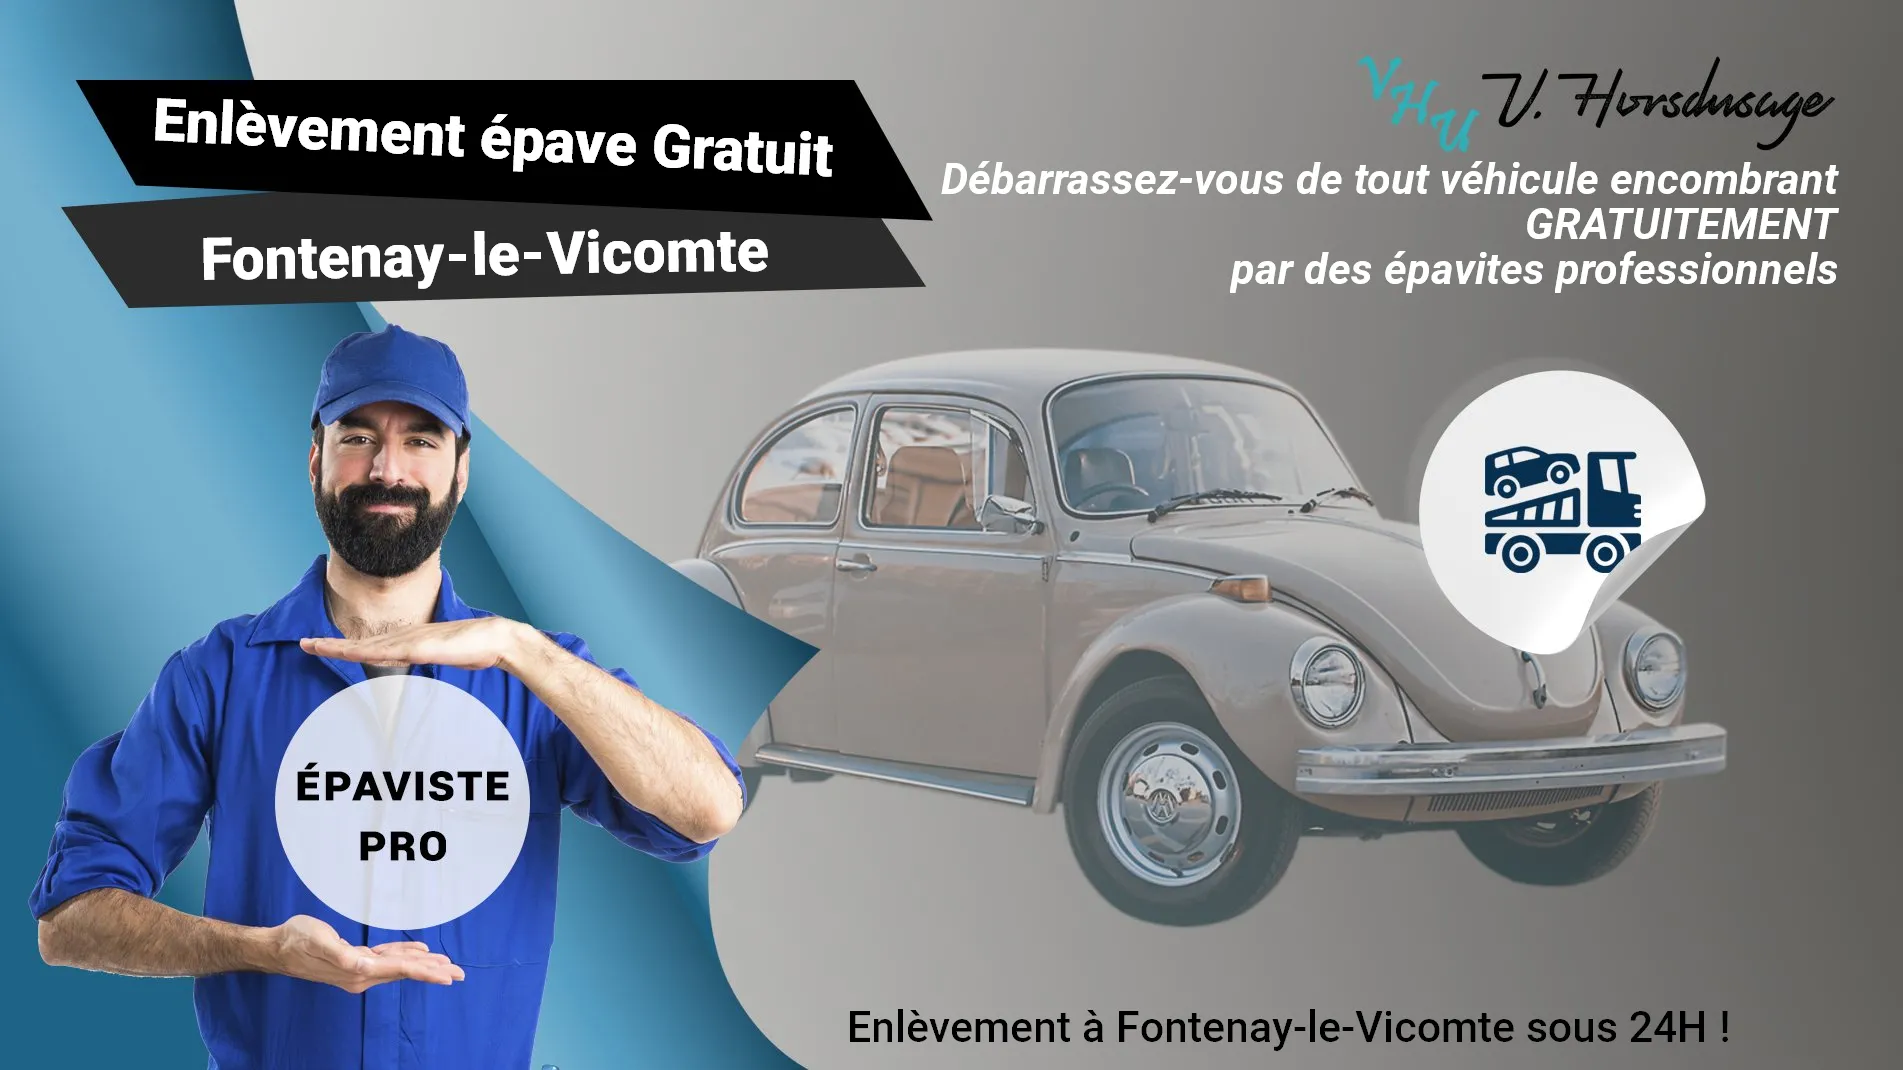 Pour un enlèvement gratuit à Fontenay-le-Vicomte, contactez nos épavistes agréé VHU